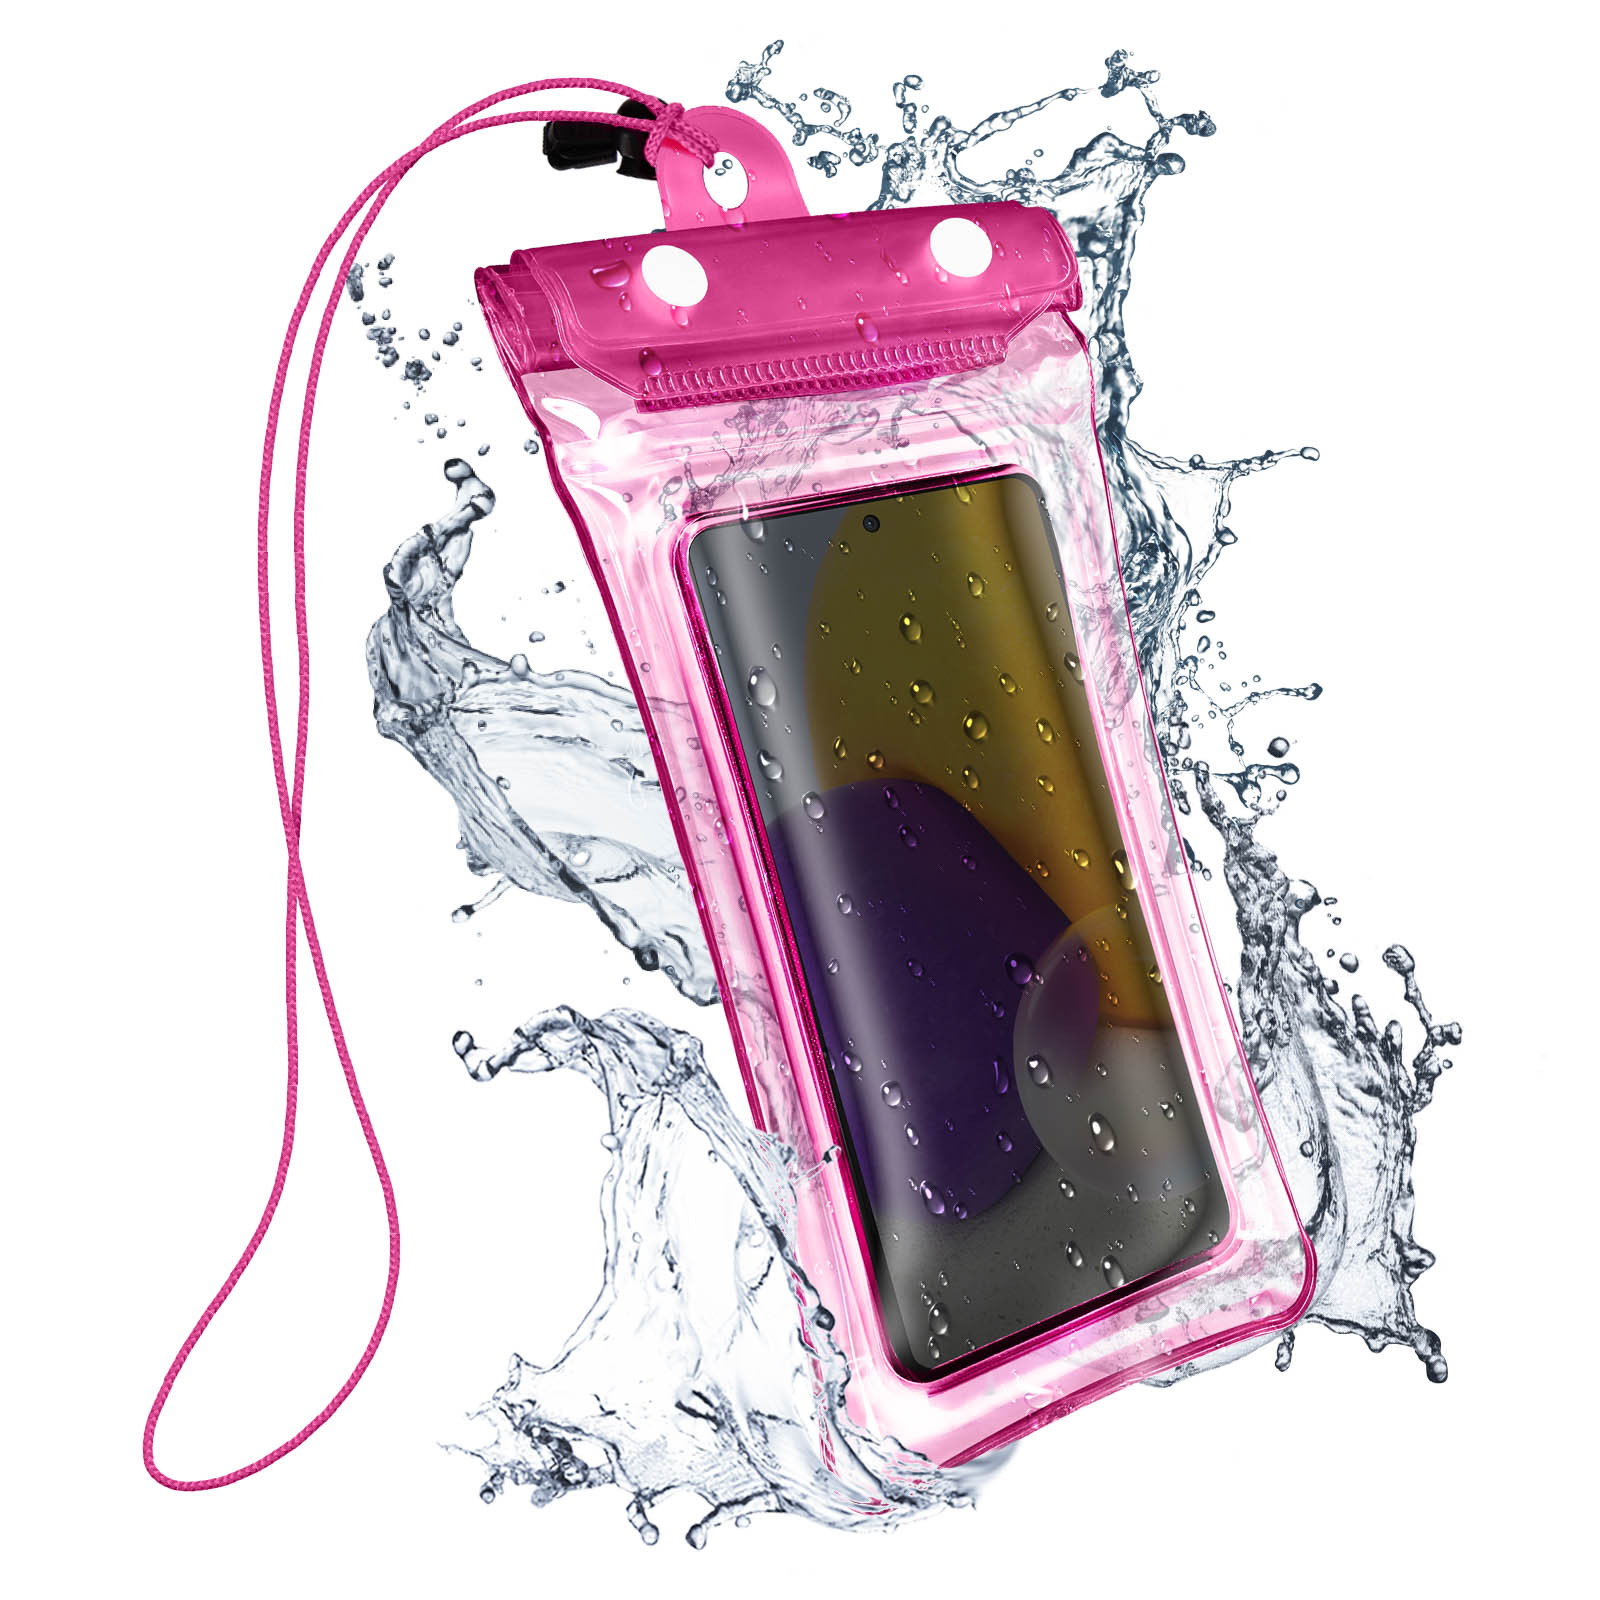 Wasserdichte Schutzhüllen für Smartphones und Tablets